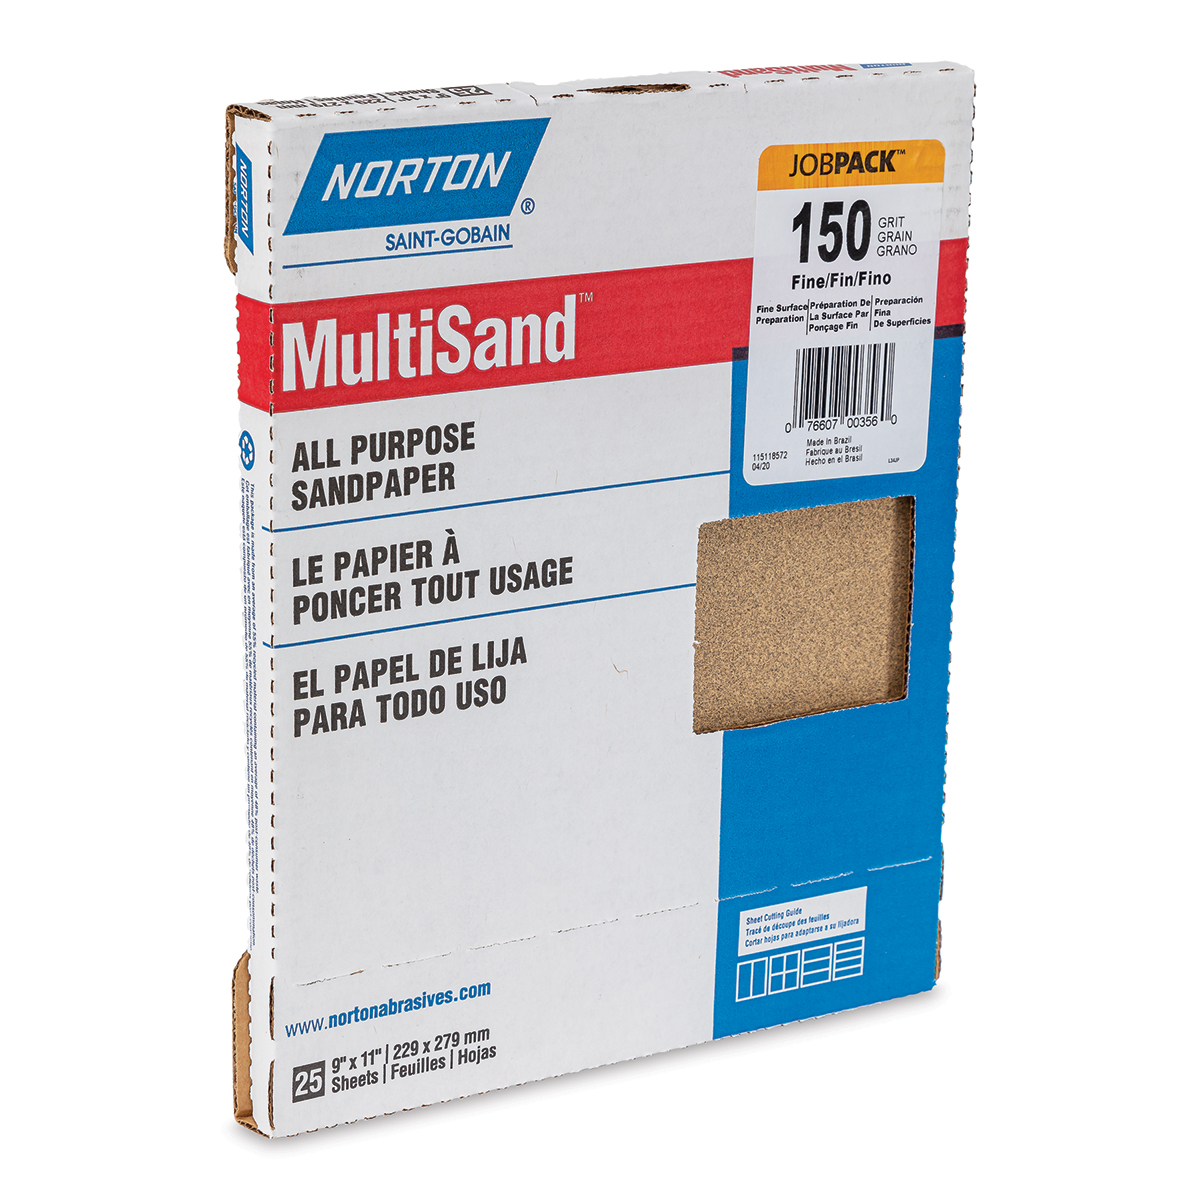 Norton Sandpaper - 25 Sheets, 9 x 11, Fine, 150 grit